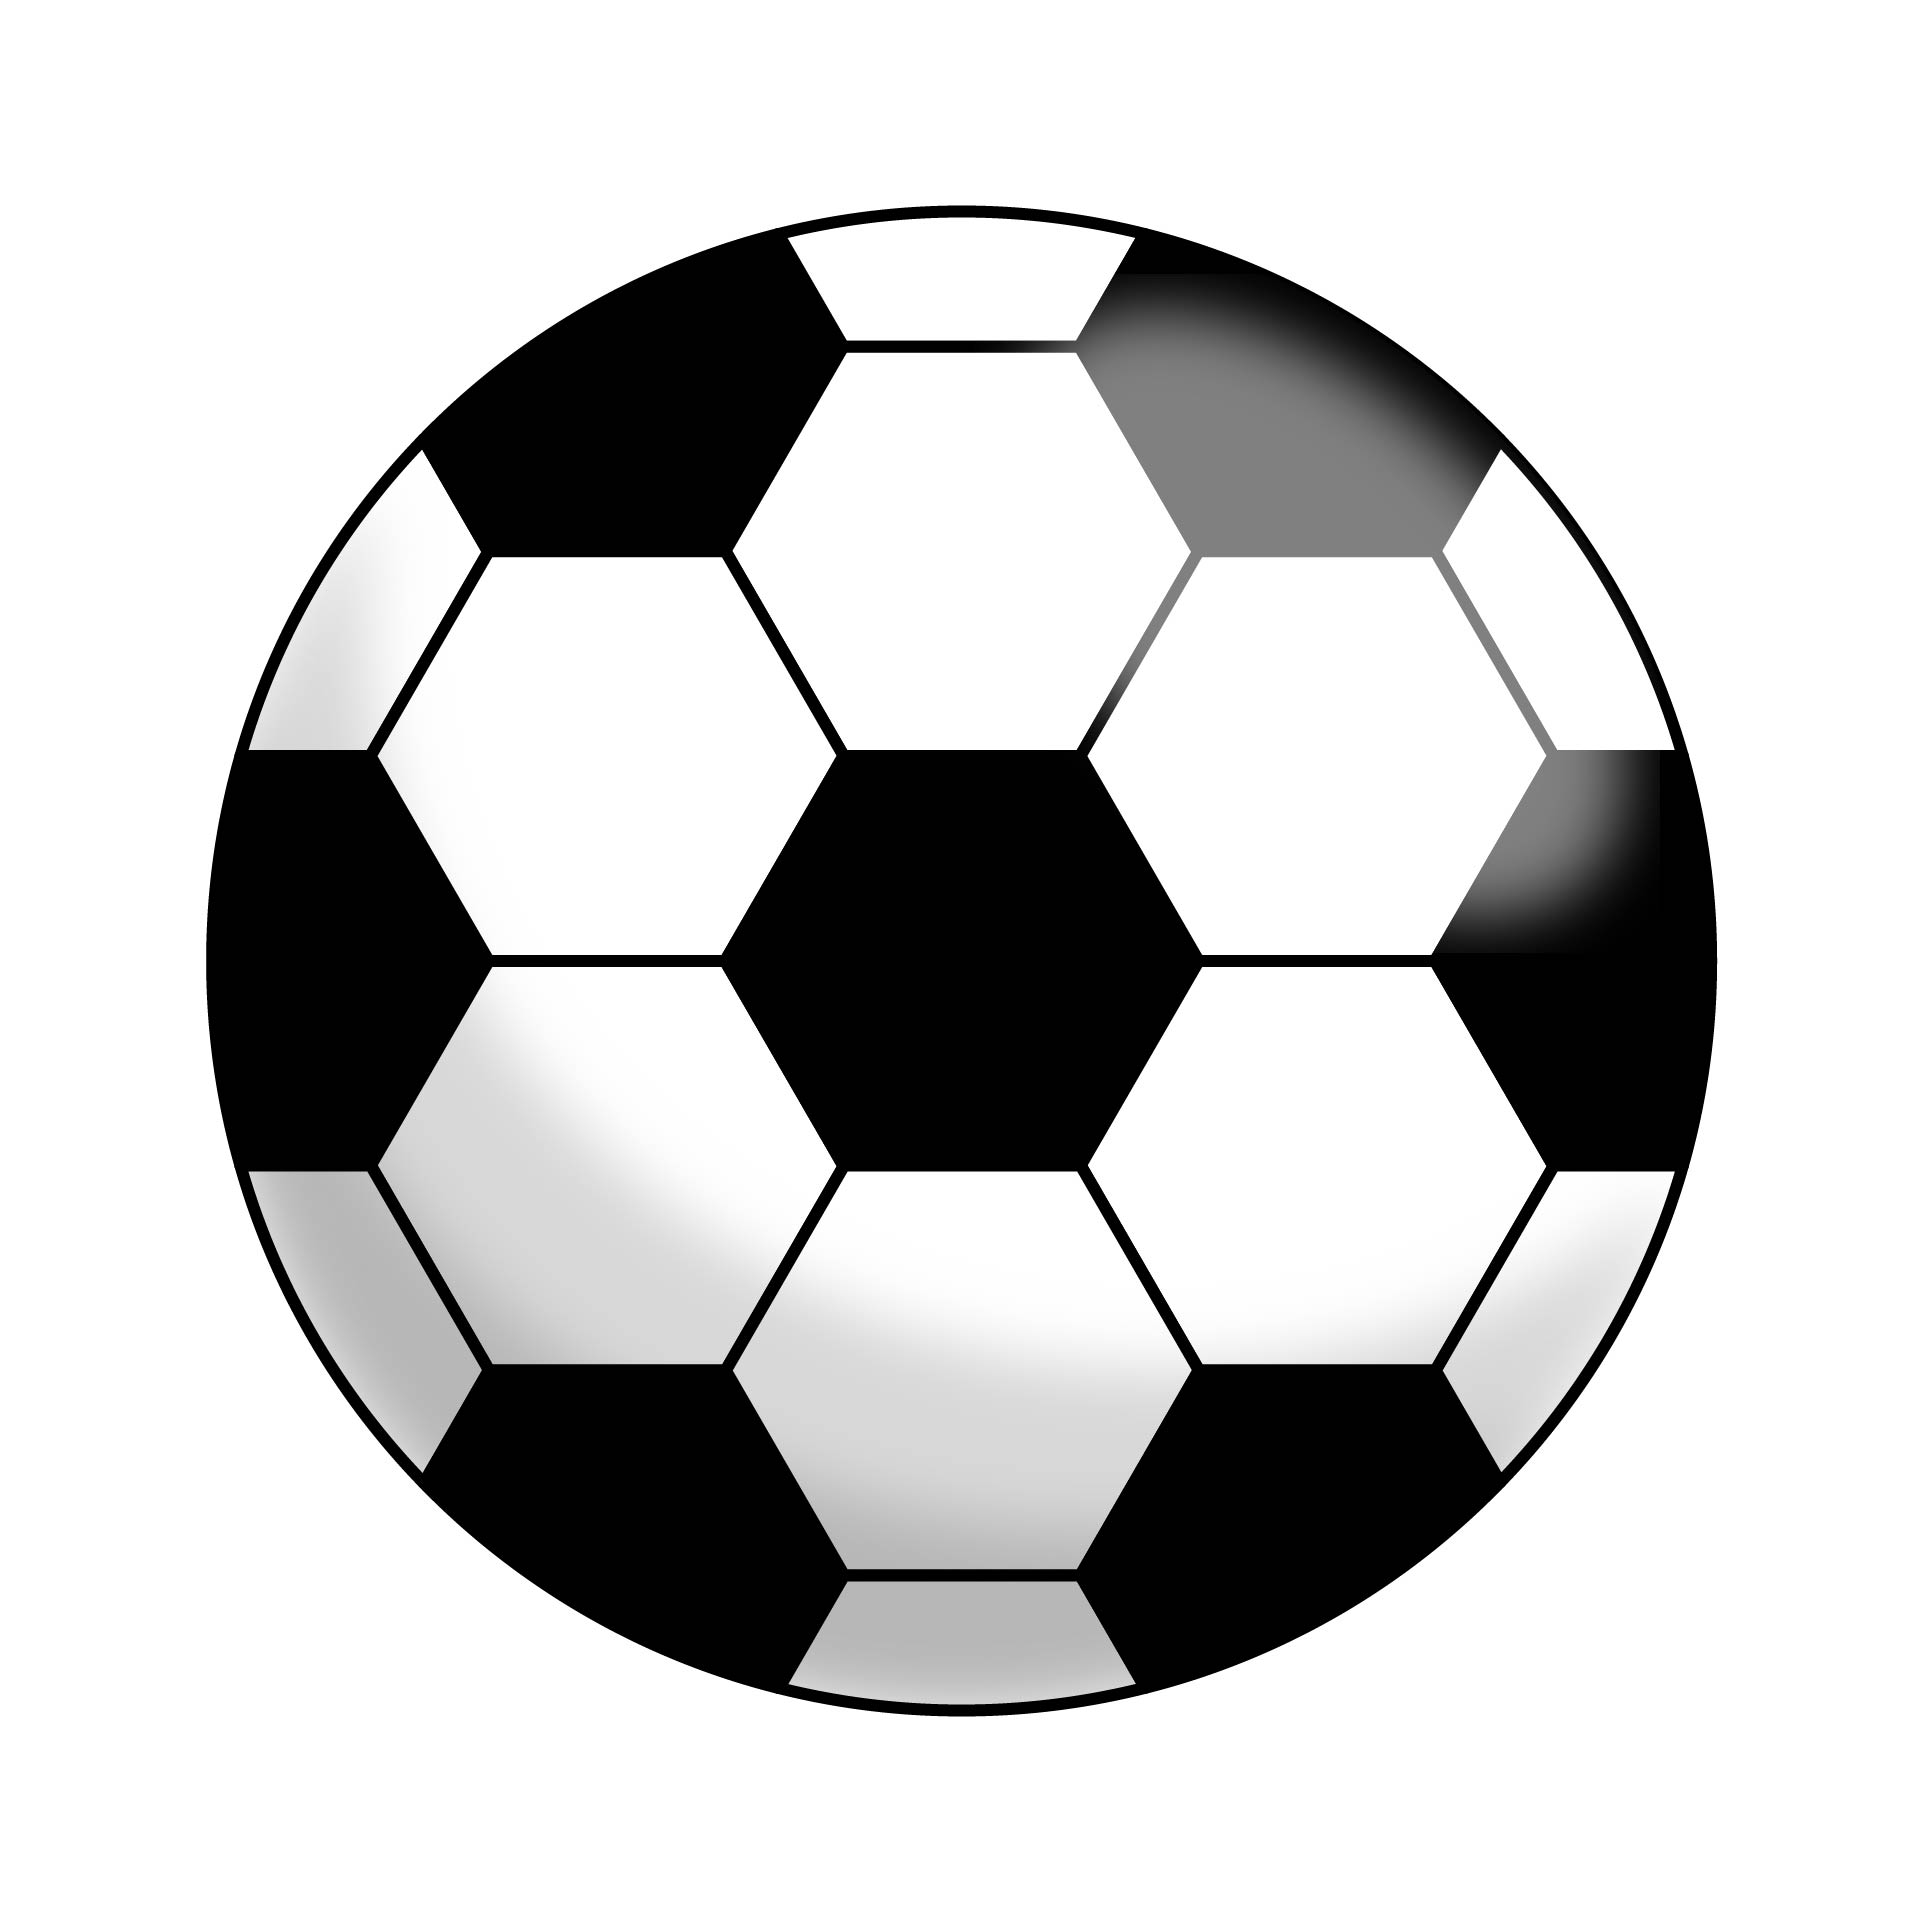 printable-soccer-ball-template-printable-templates